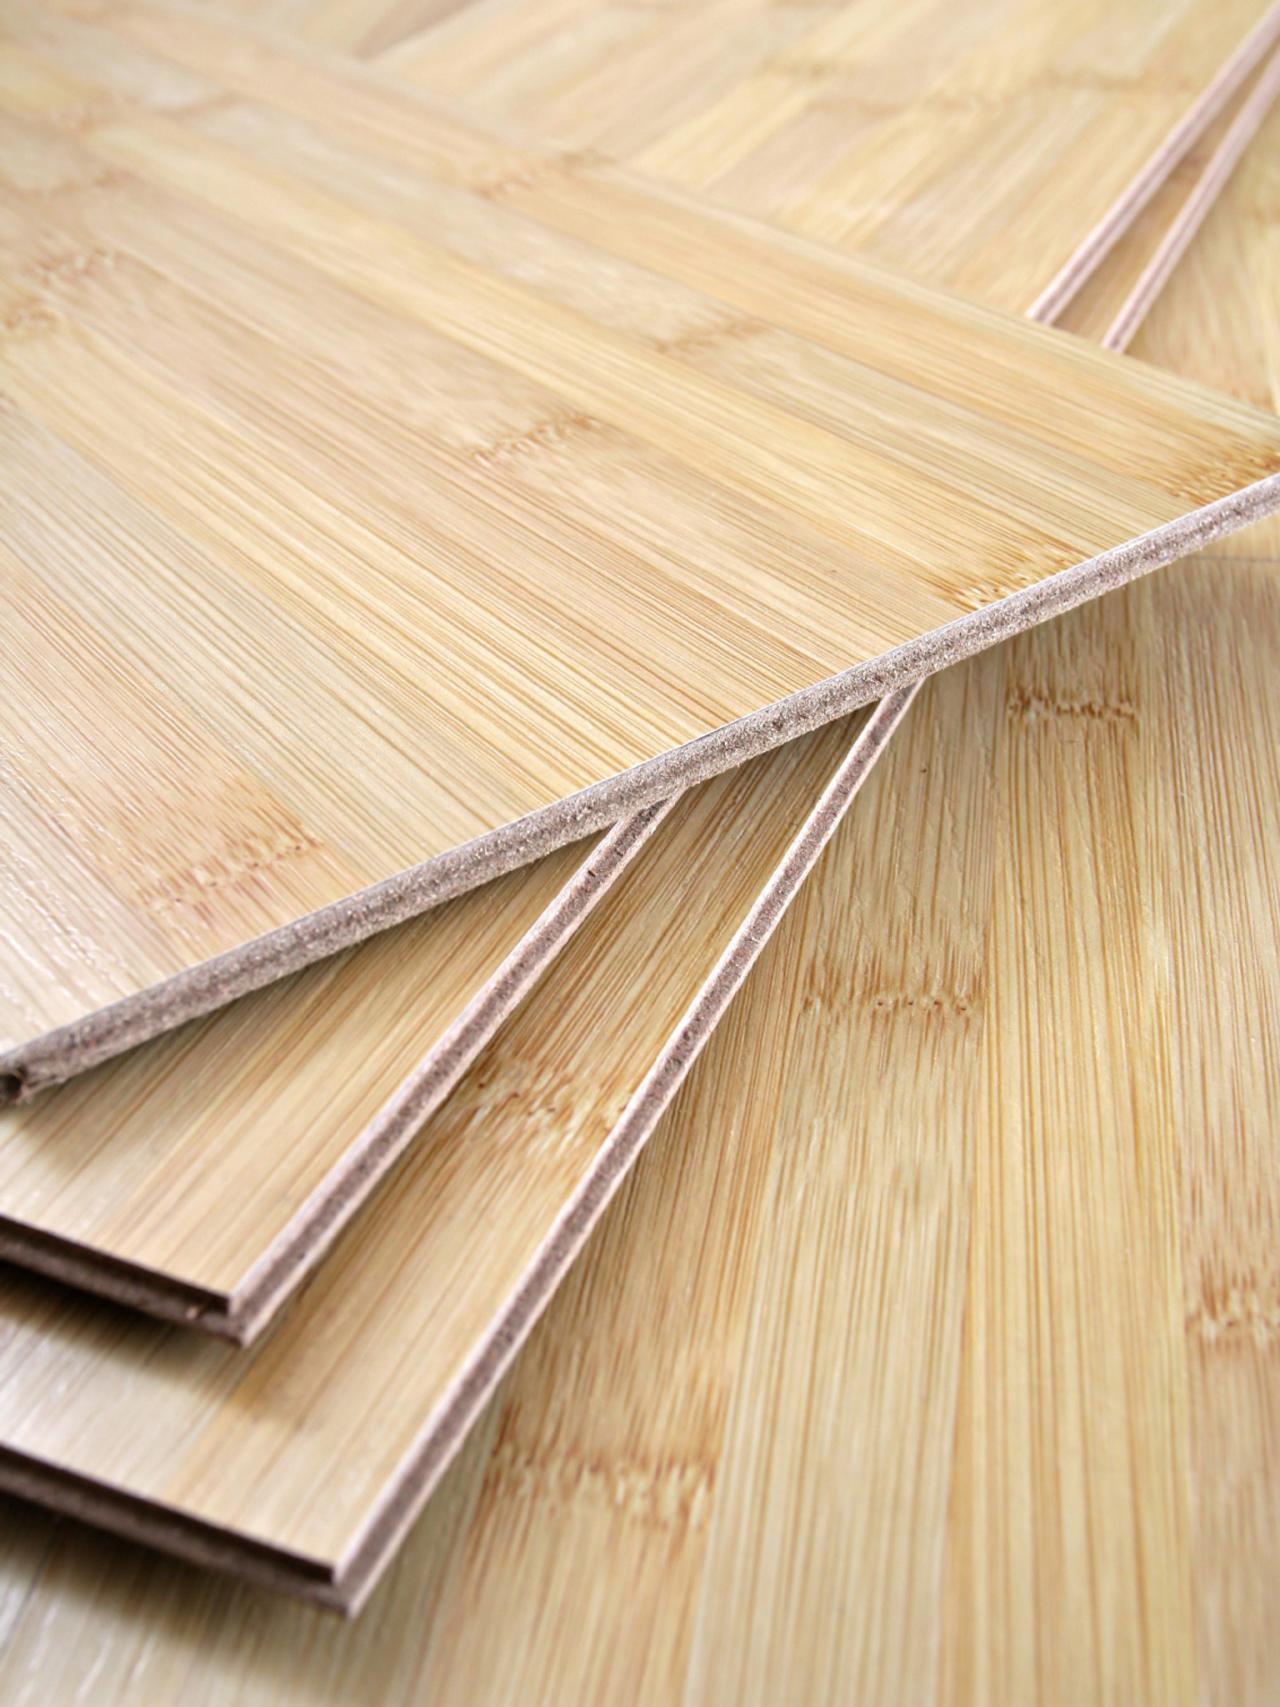 Cost Of Bamboo Floor Vs Engineered Hardwood, Hardwood Or Bamboo Flooring